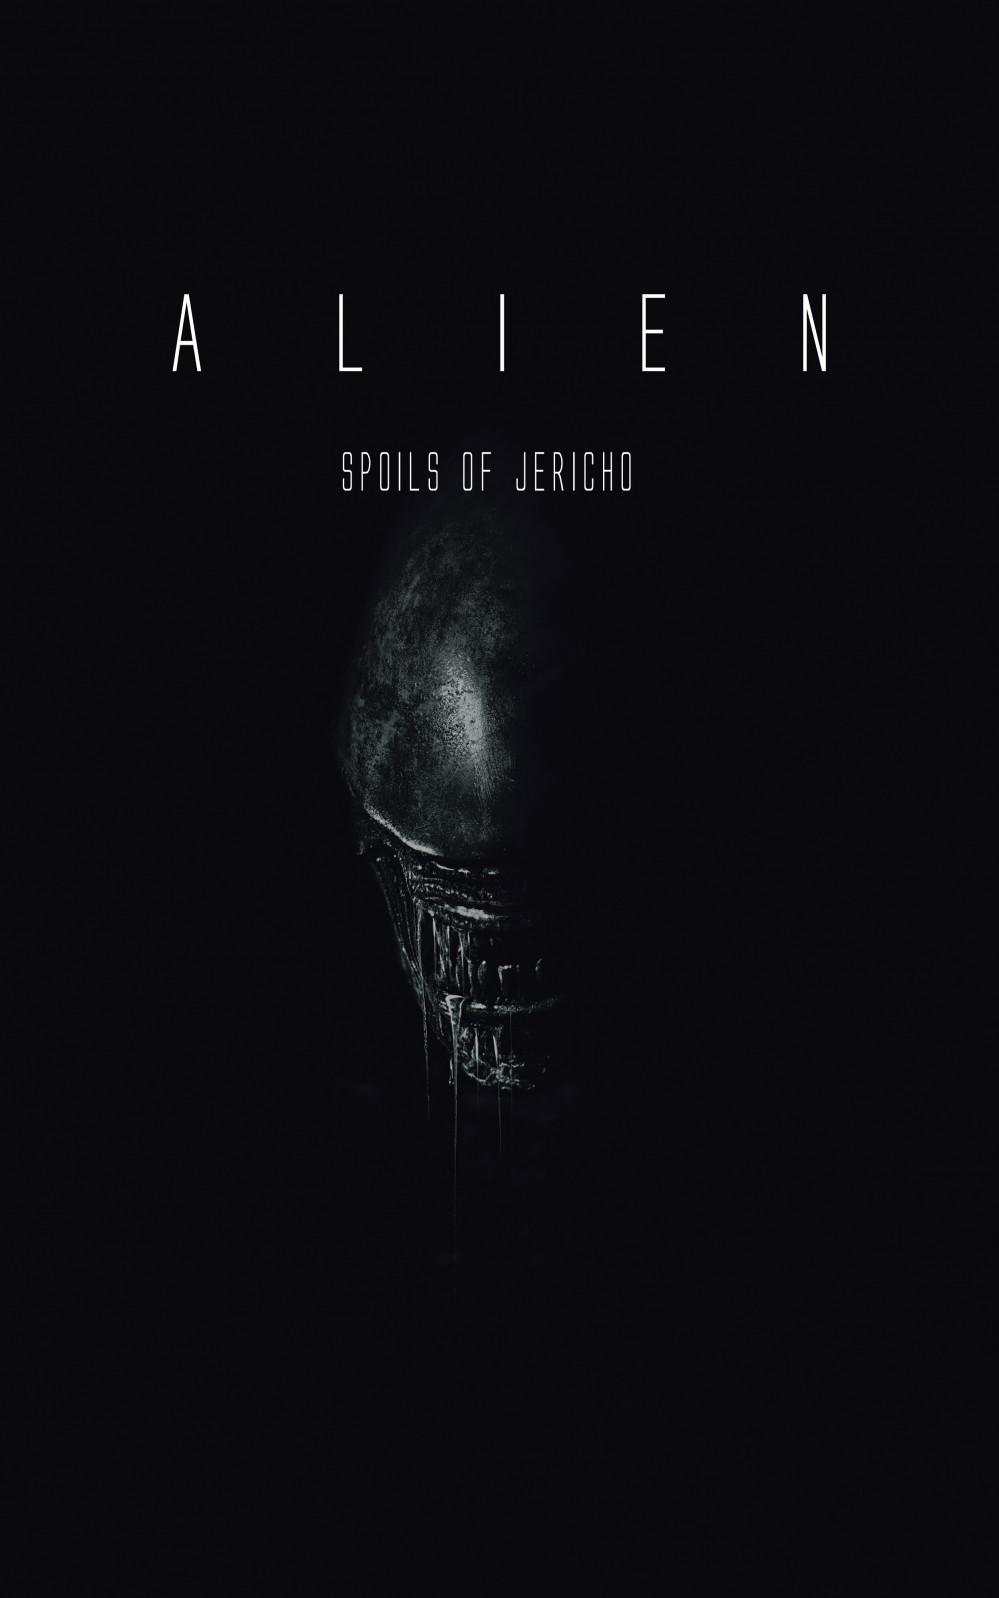 Alien – spoils of Jericho